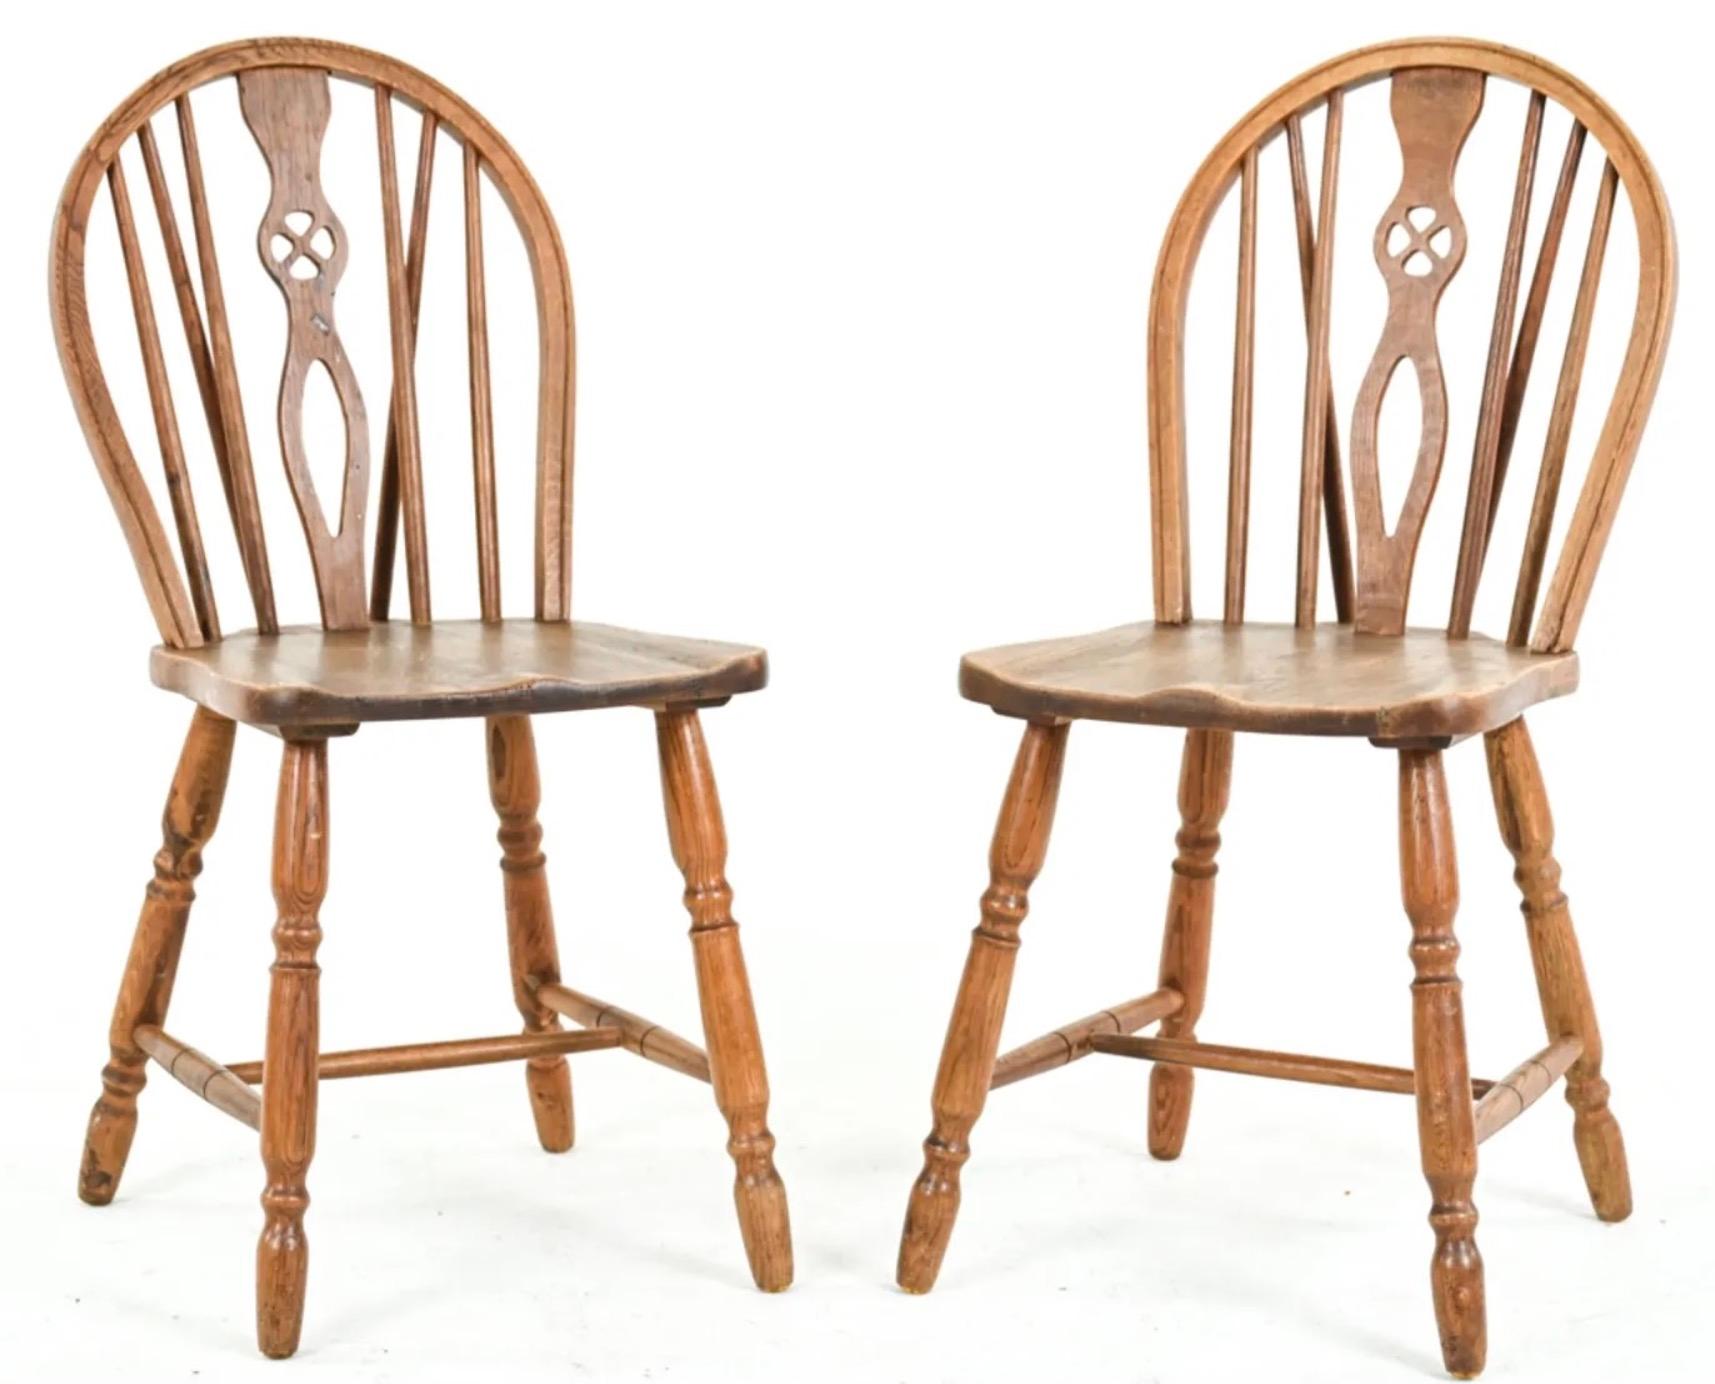 Wunderschön handgeschnitzte Esszimmerstühle mit niedriger Rückenlehne im Windsor-Stil aus Eibenholz, mit durchbrochenen Rückenlehnen und gut geformten Sitzen, die auf gedrechselten Beinen stehen, die durch einfache Strecker verbunden